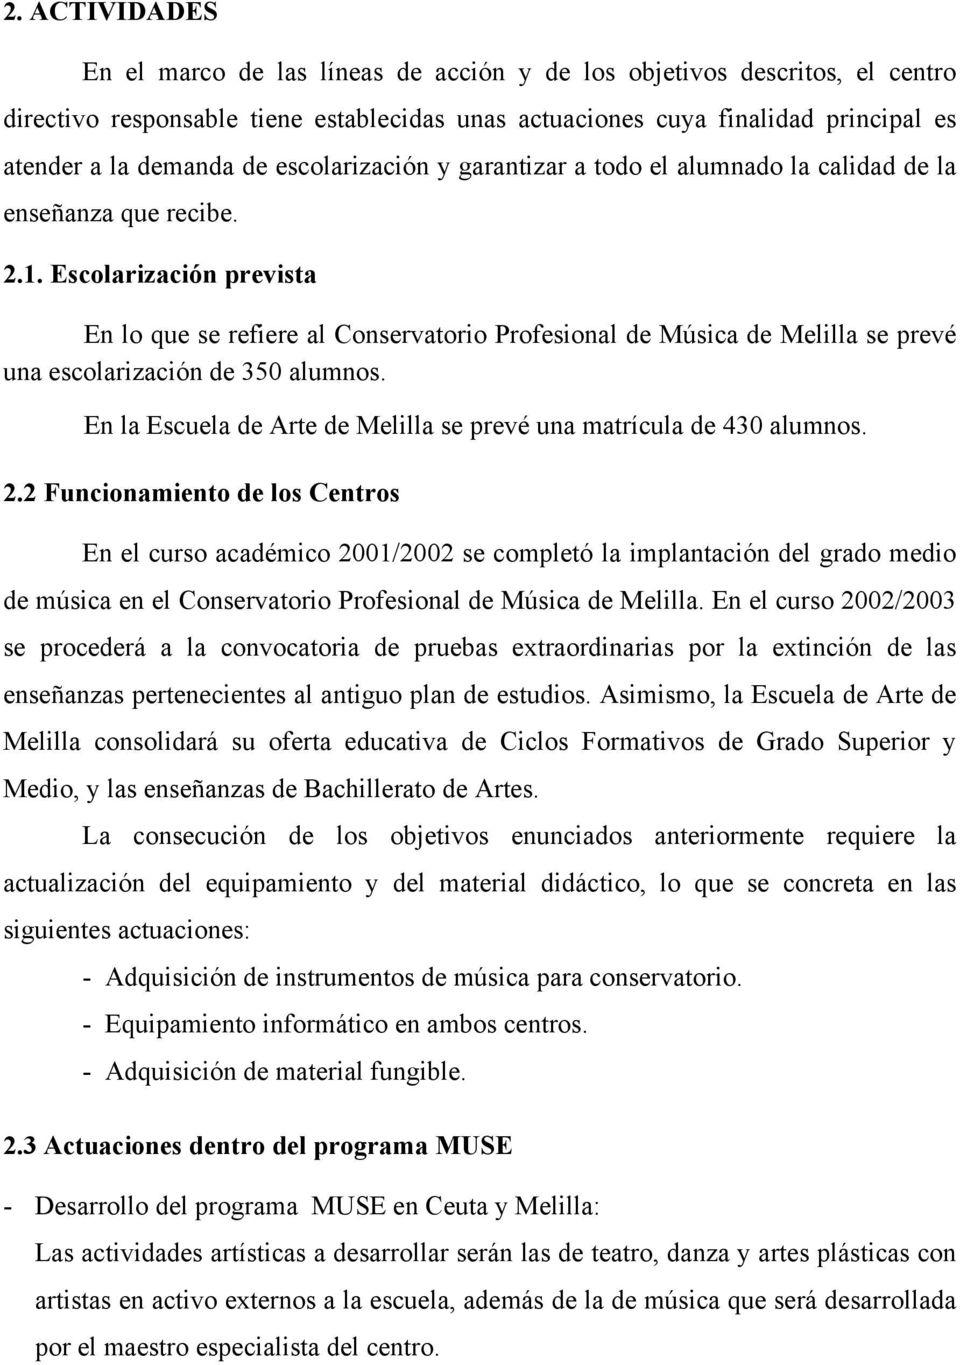 Escolarización prevista En lo que se refiere al Conservatorio Profesional de Música de Melilla se prevé una escolarización de 350 alumnos.